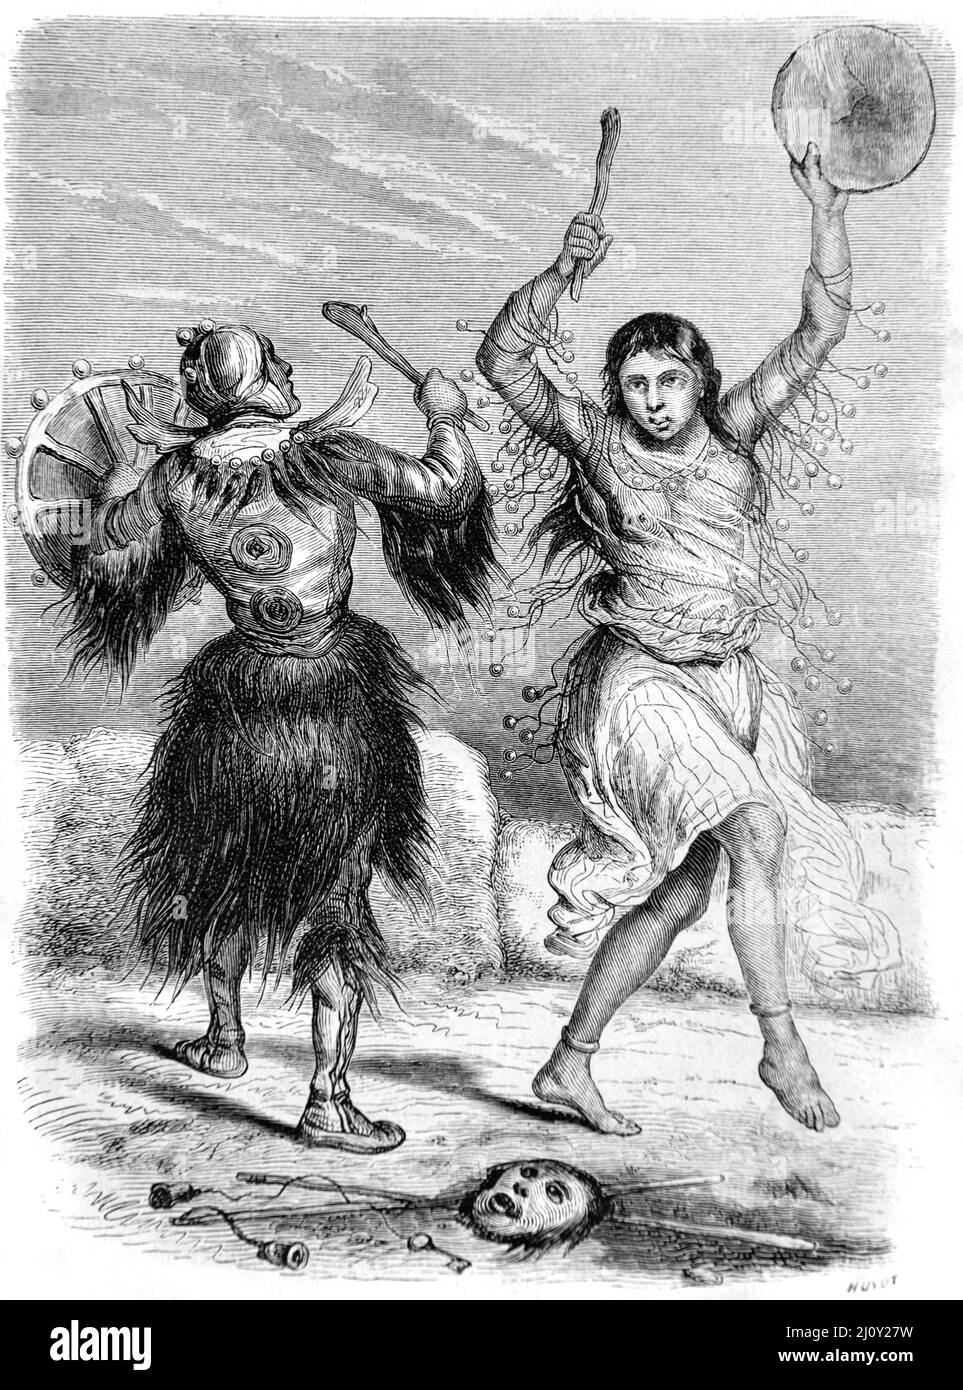 Danse Yakut Shaman ou Sorcerer (maintenant en République de Sakla, Russie) Vintage Illustration ou gravure 1860. Banque D'Images